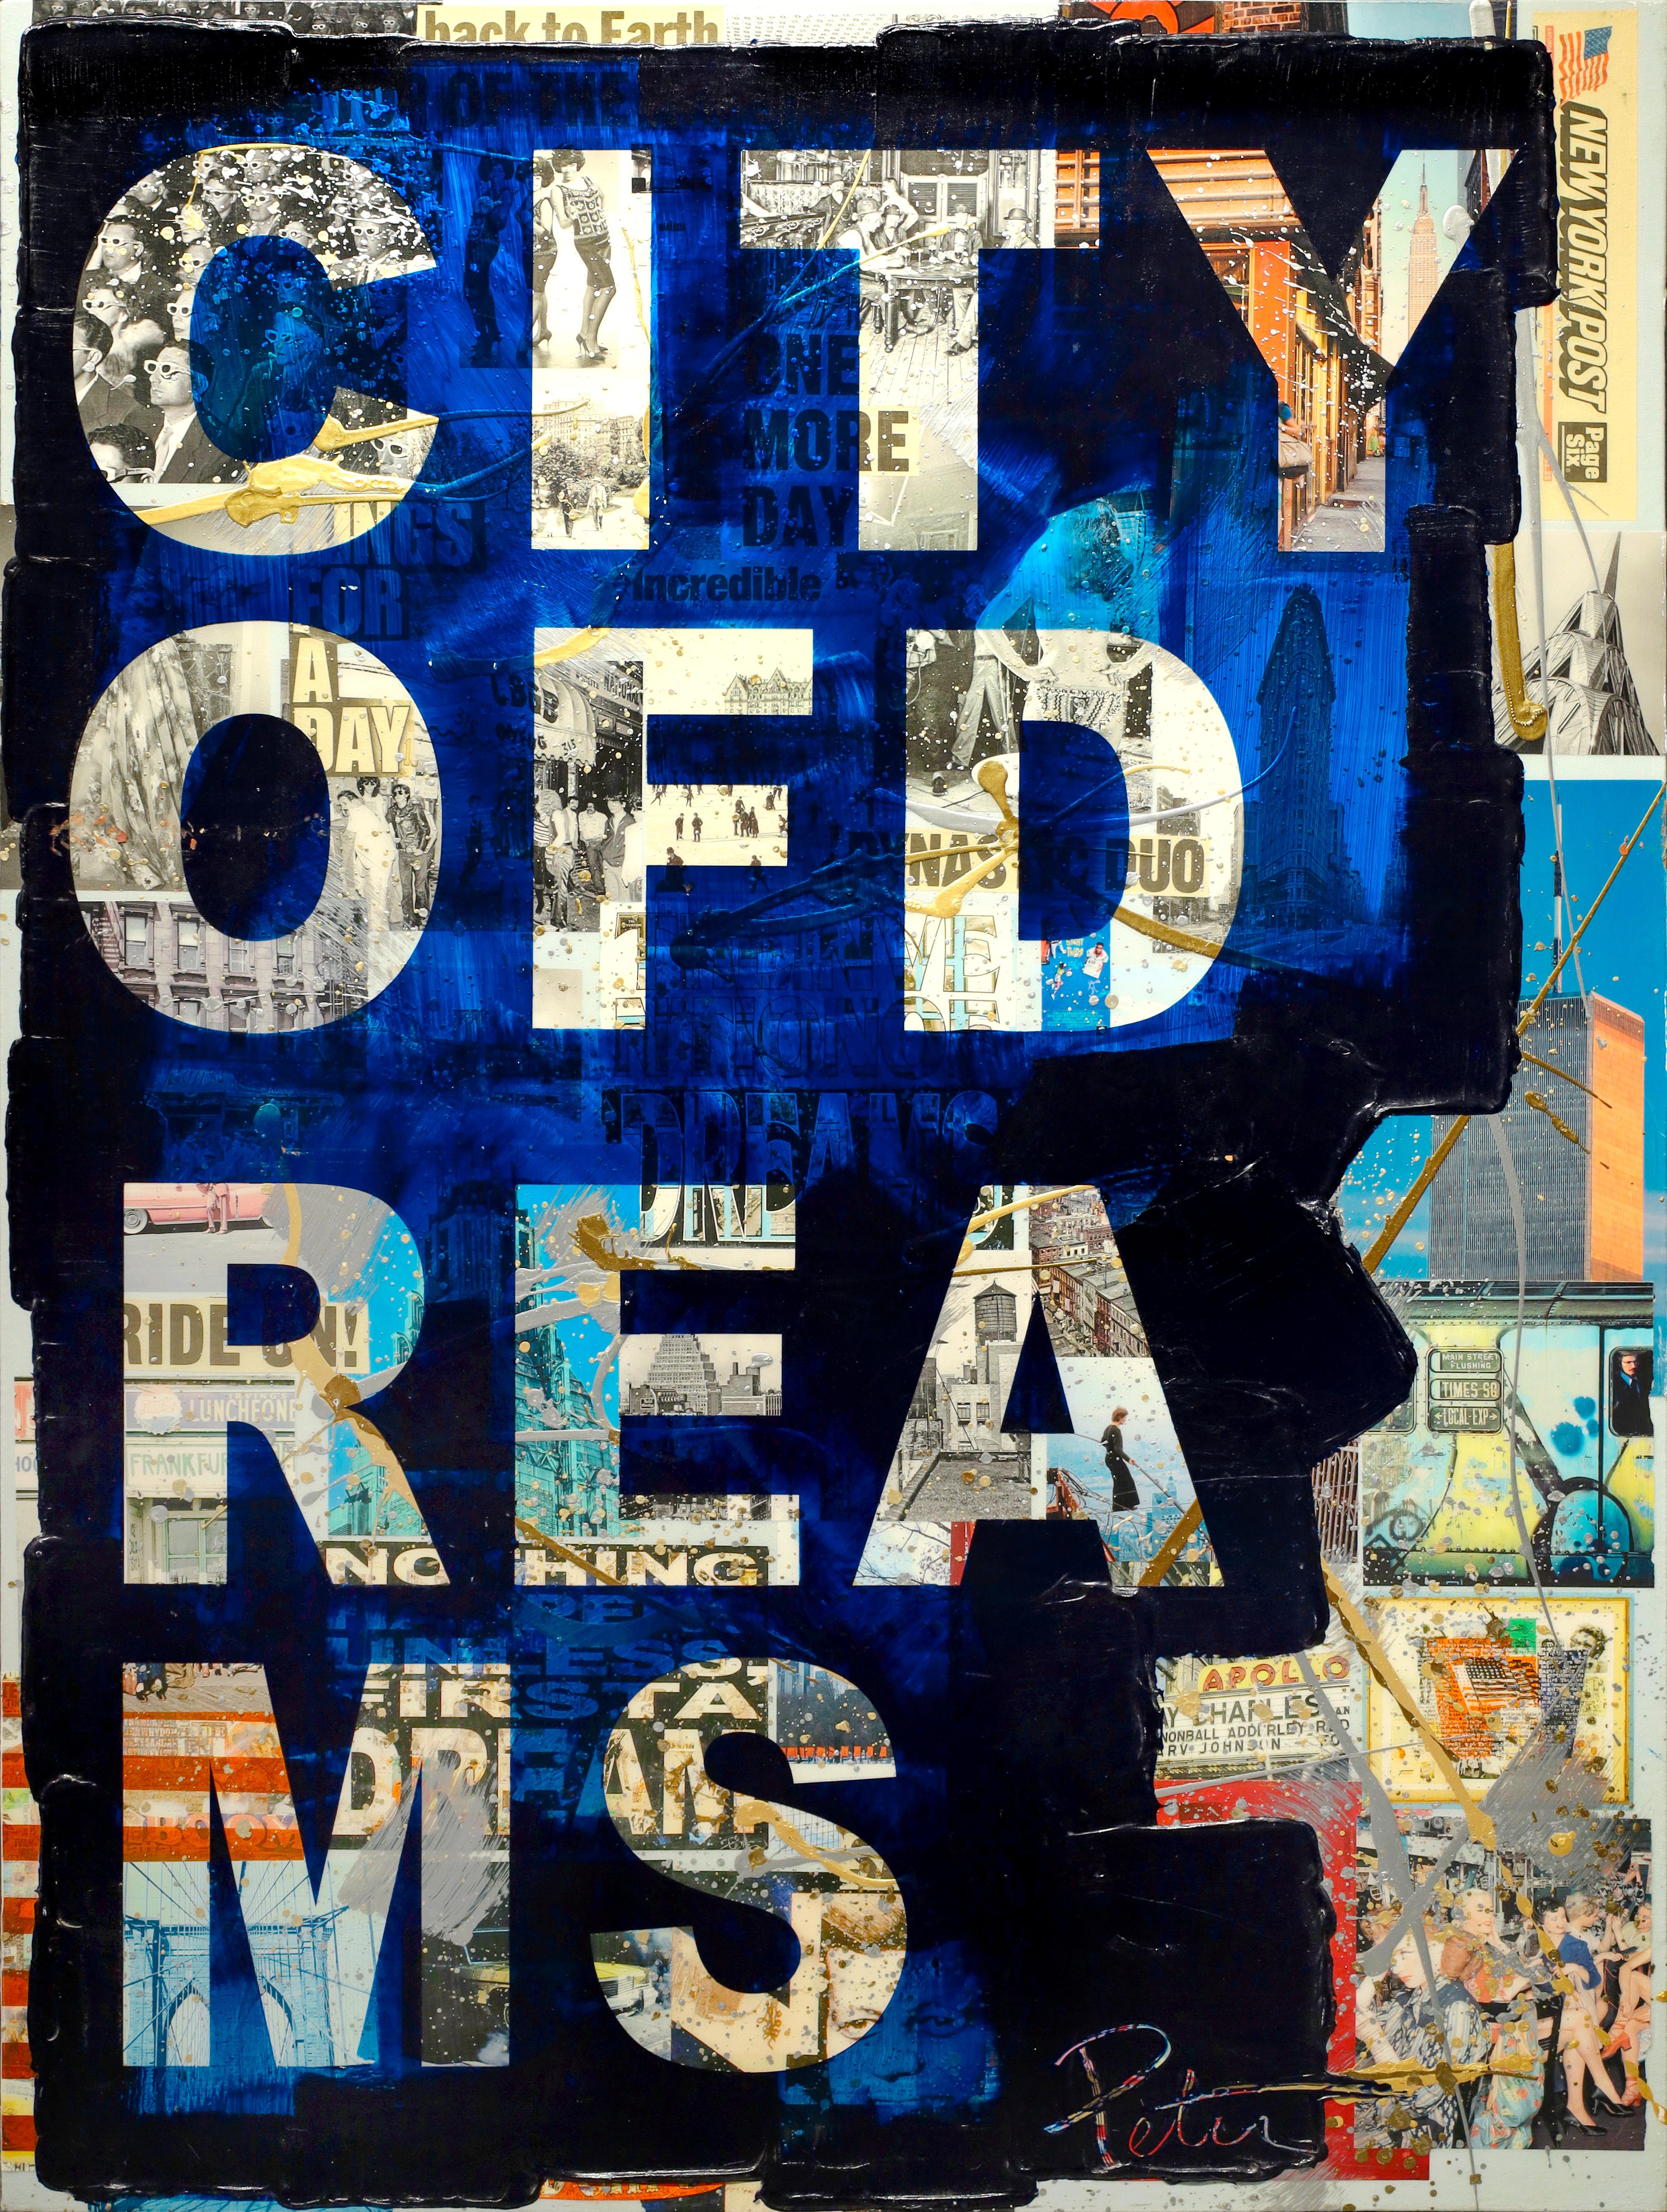 Peter Tunney "Stadt der Träume" ist ein einzigartiges Gemälde Collage Arbeit auf Leinwand, 2015. Signiert vom Künstler unten rechts in Scraffito. Acrylfarbe, umfangreiche Collage aus gemischten Medien auf Leinwand. 

Peter Tunney ist ein